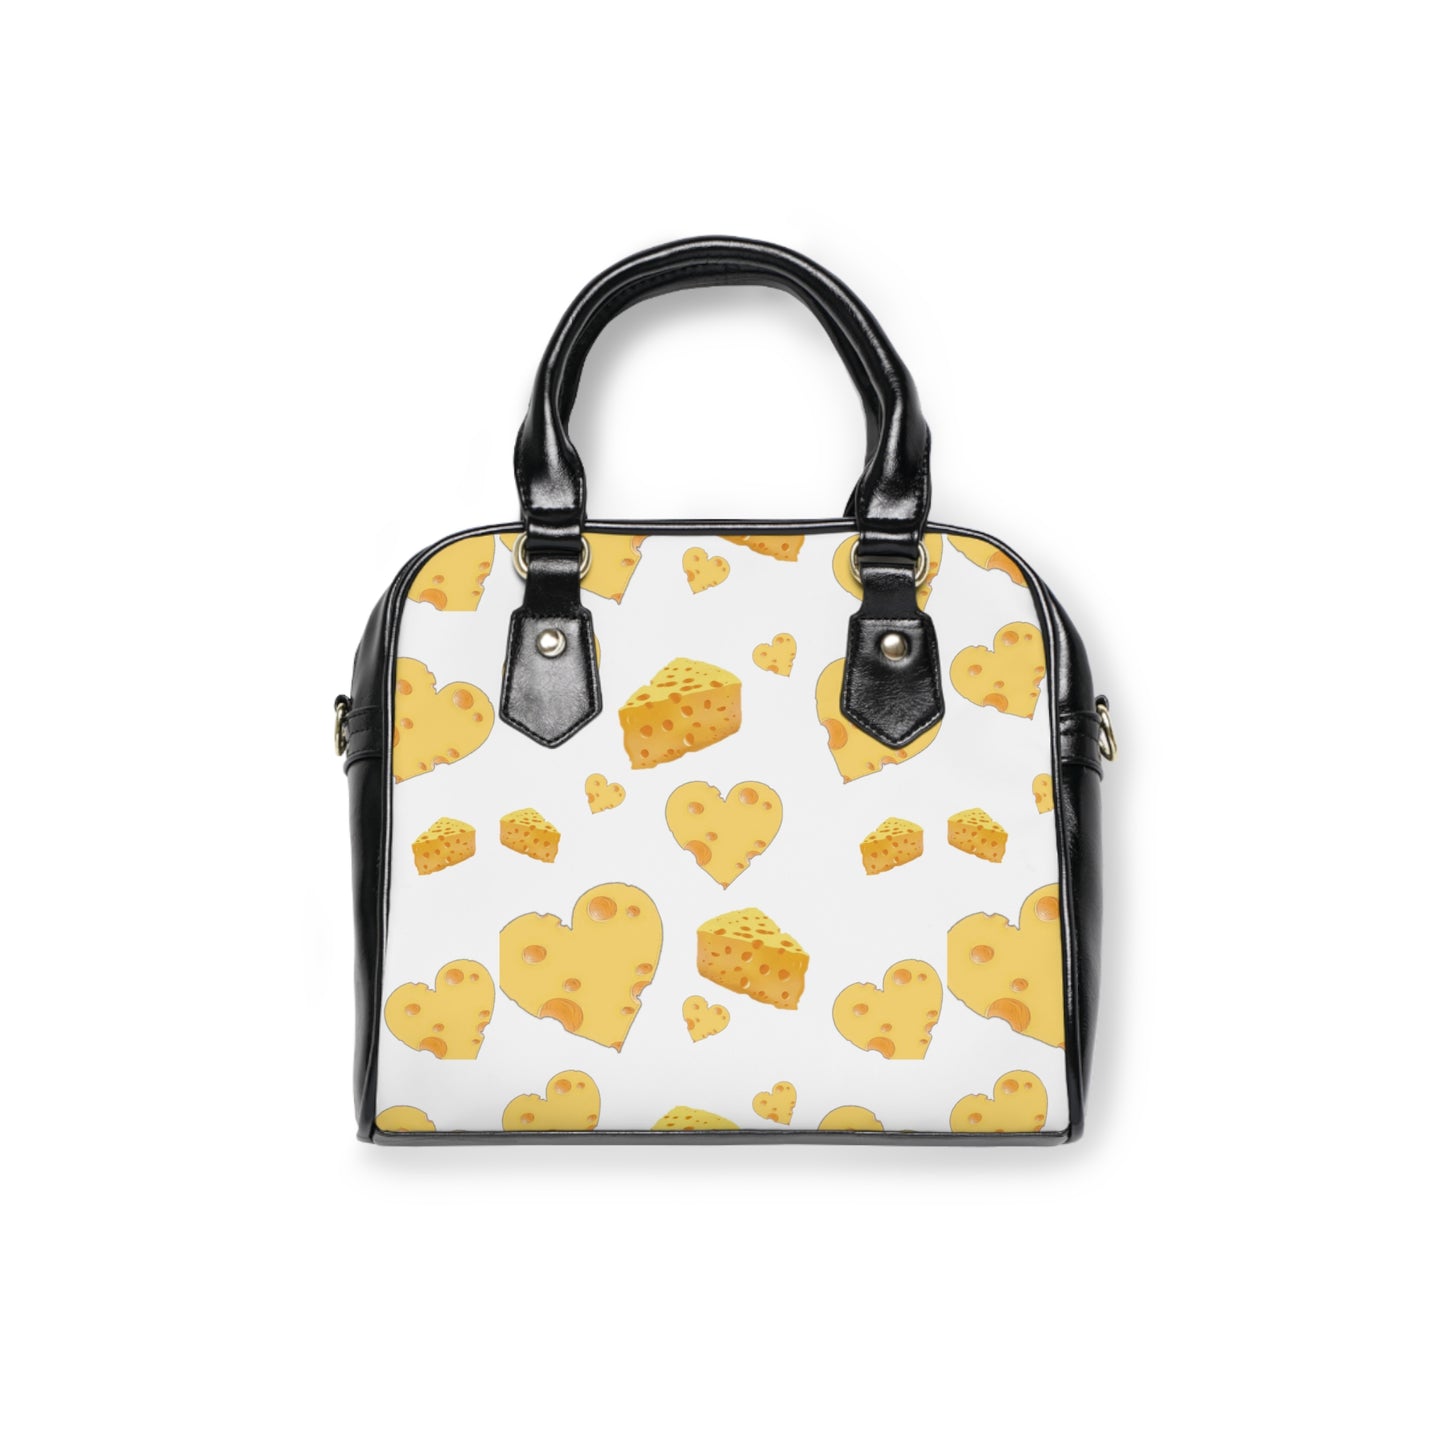 Cheesy Shoulder Handbag